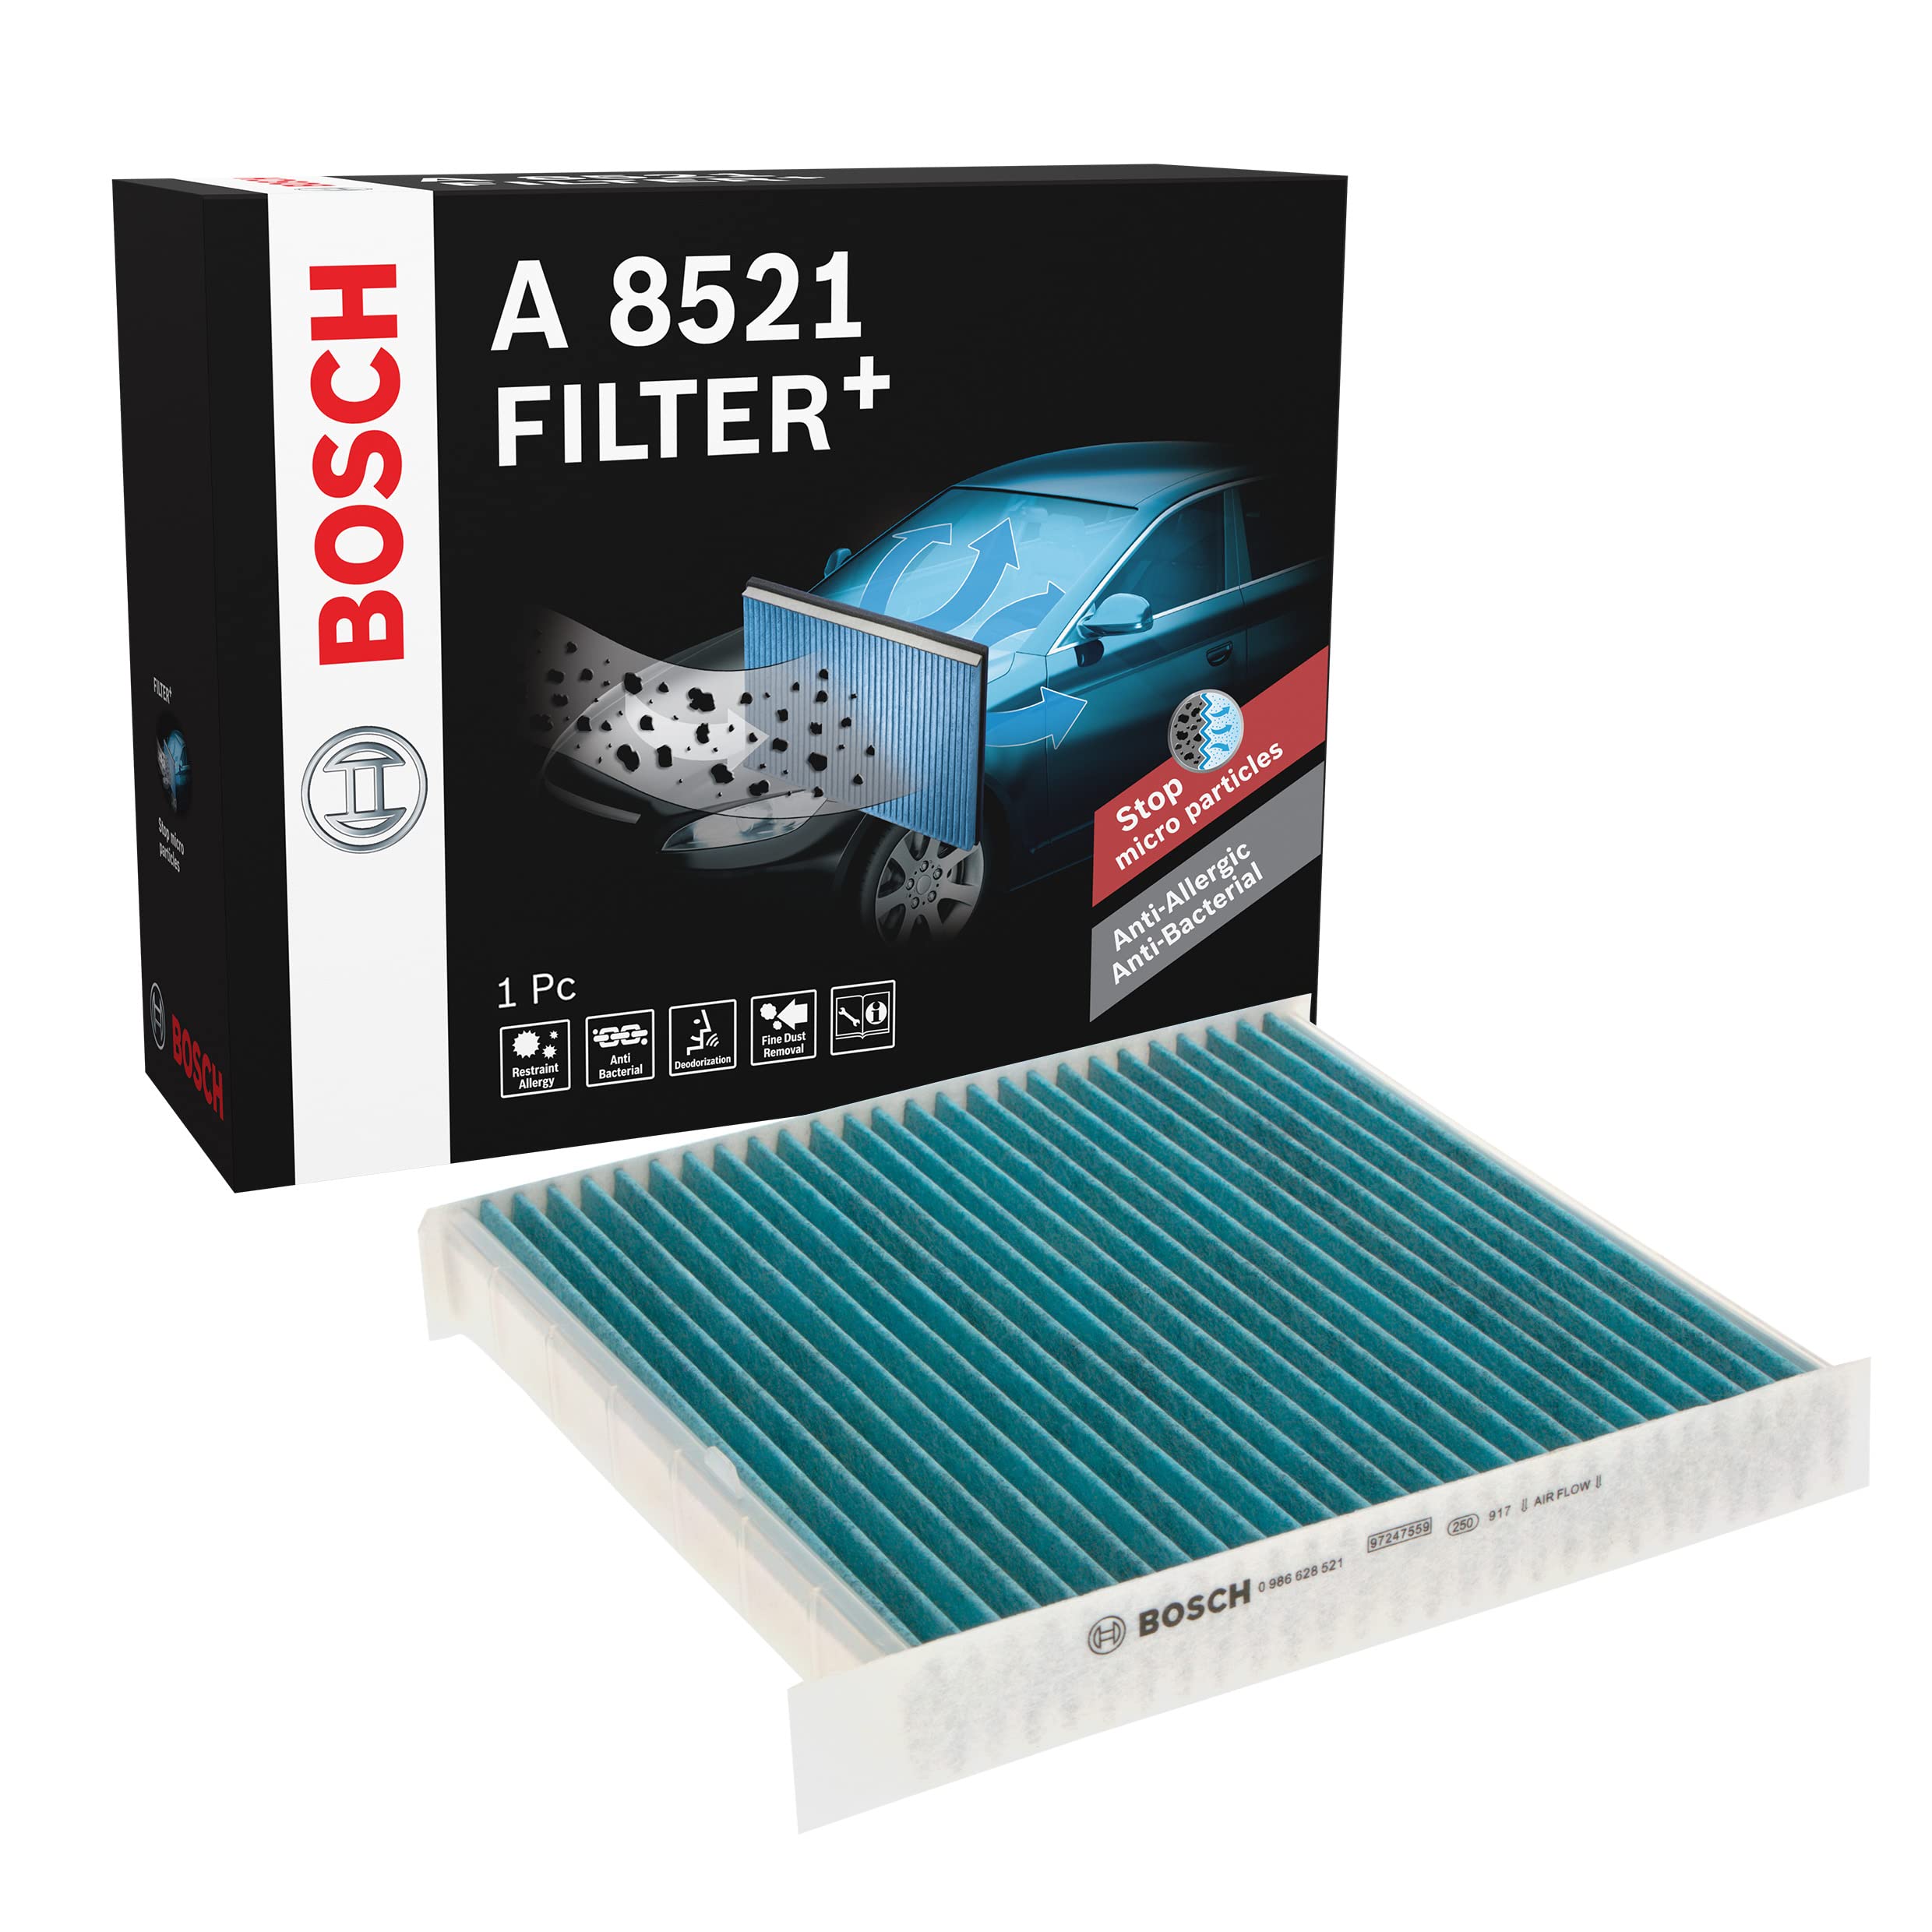 Bosch A8521 - Innenraumfilter Filter+